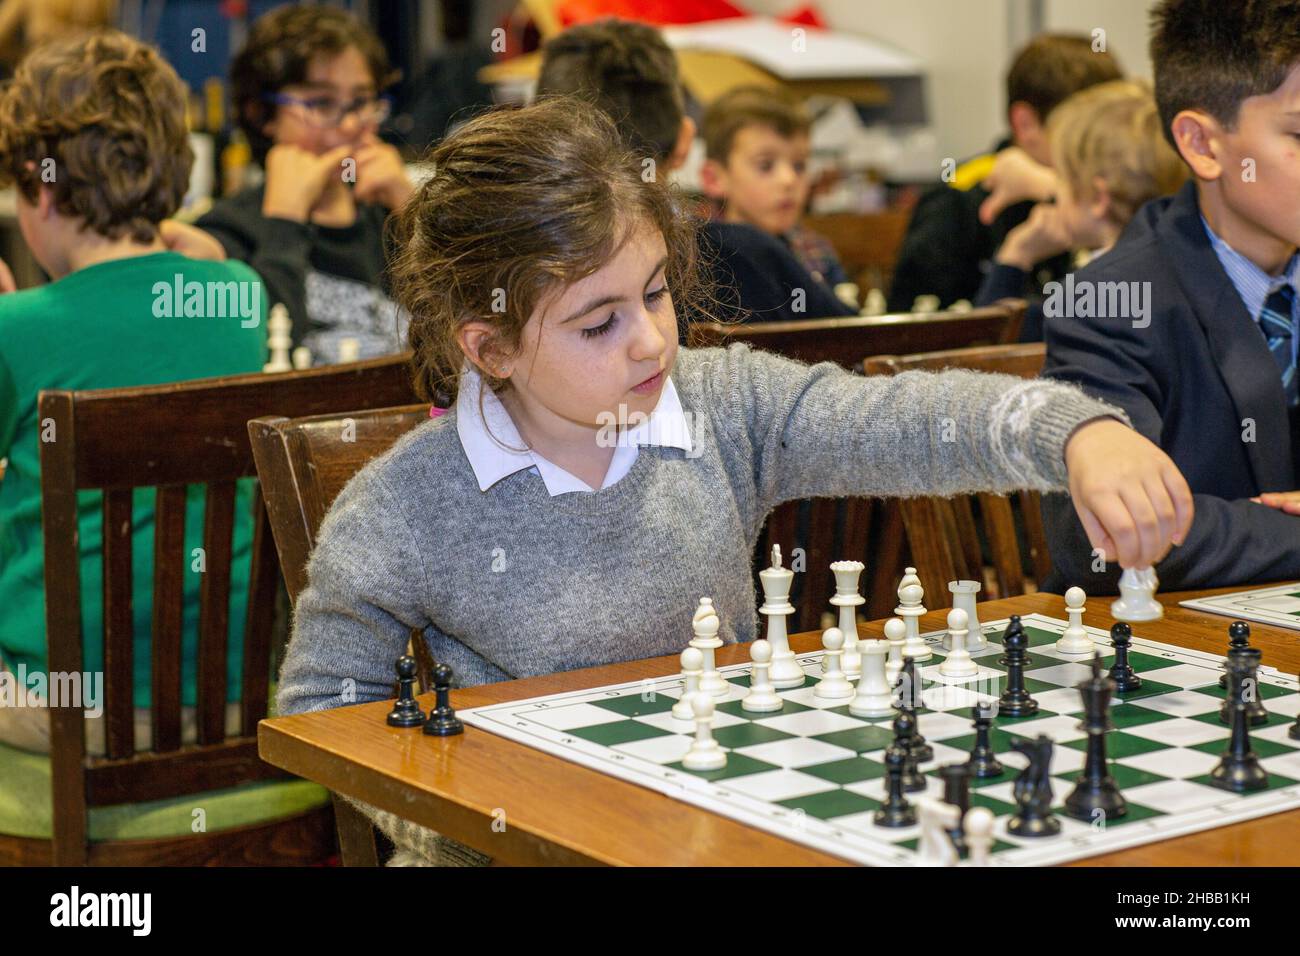 Intelligente Spiele. Ein Kind spielt Schach. Mädchen und ein Schachbrett. Strategie. Logisches Denken. Kleines Mädchen spielt Schach Stockfoto